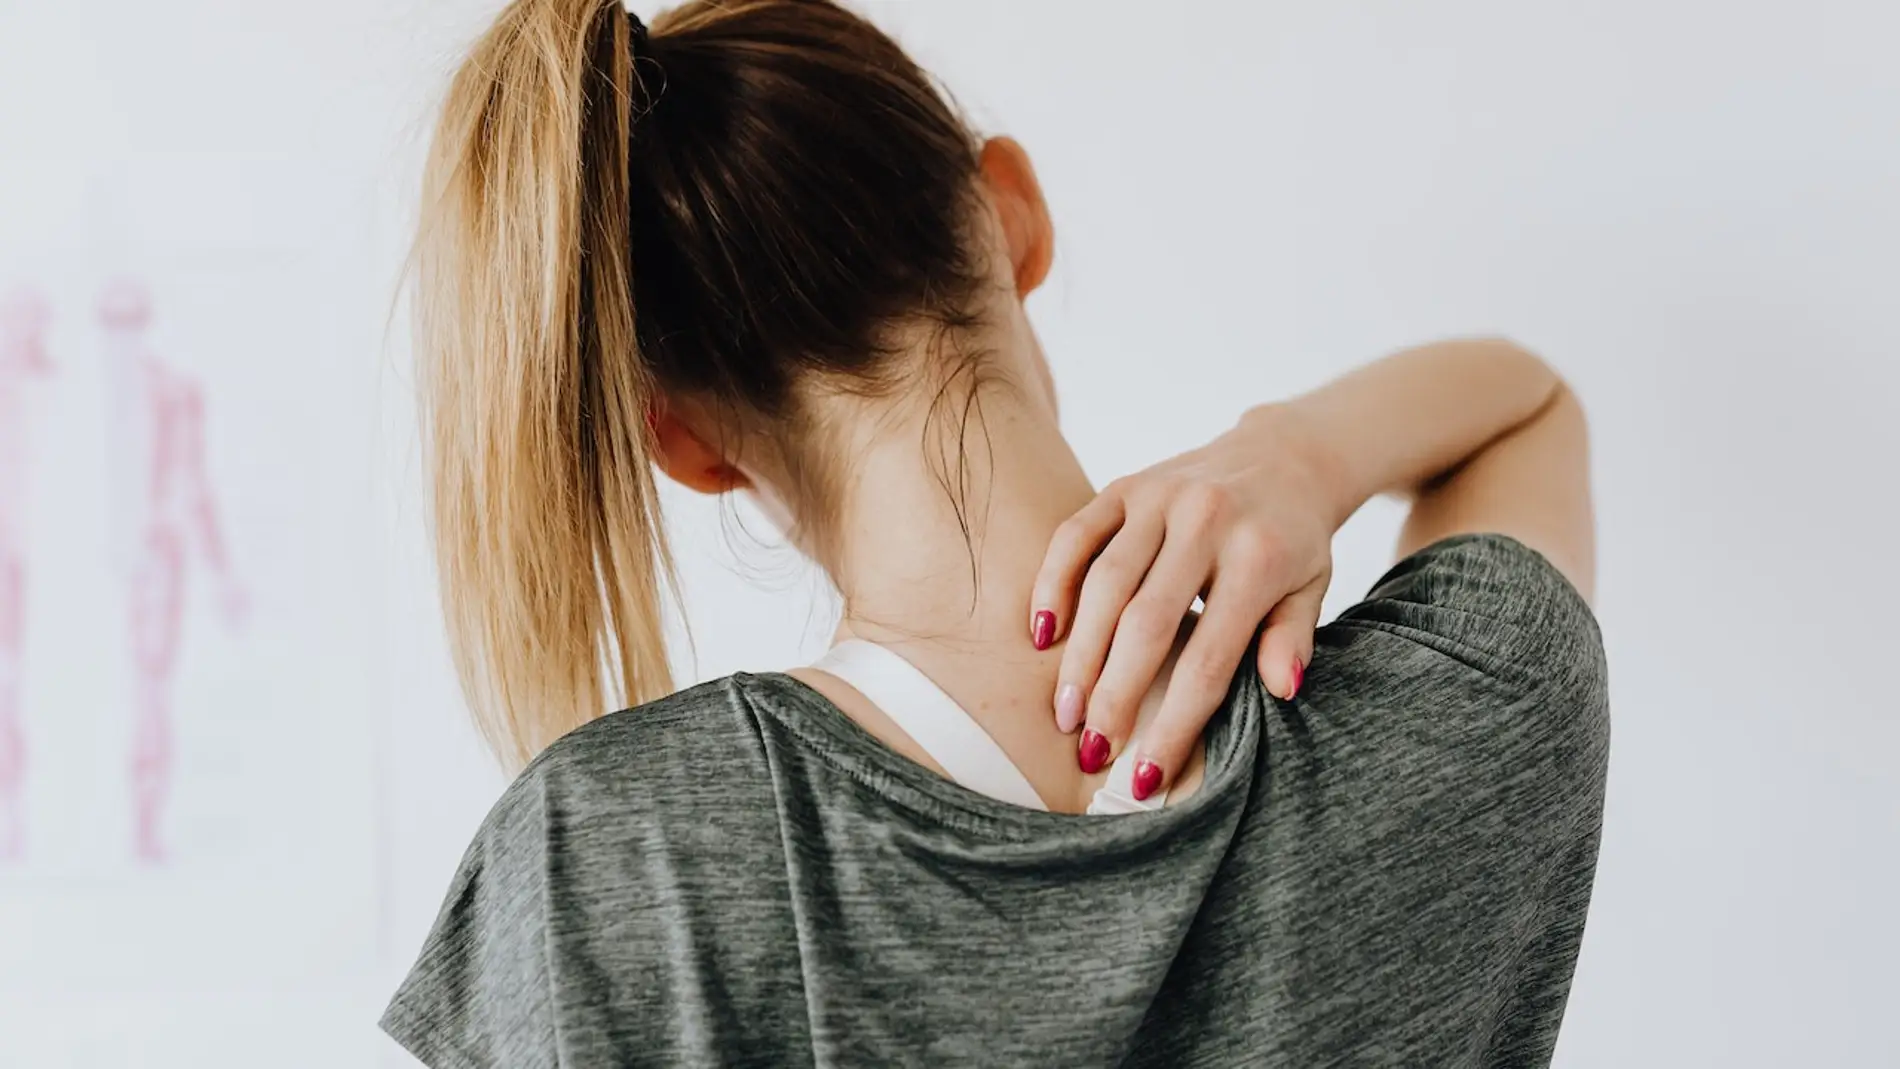 Por qué la solución al dolor de espalda puede ser ir al psicólogo